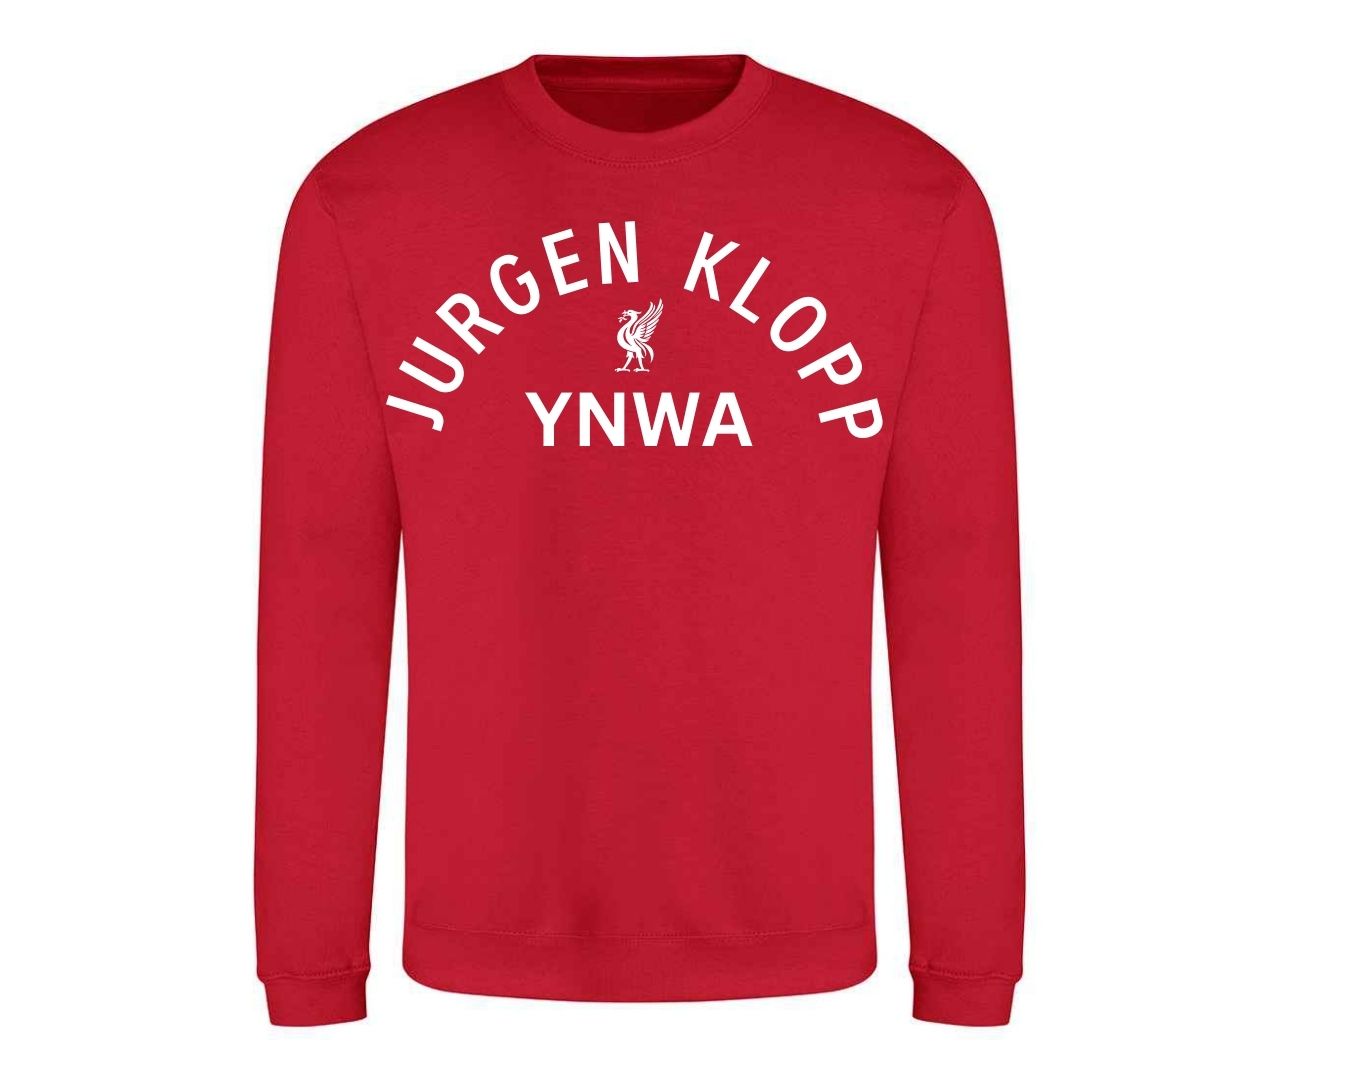 Jurgen Klopp YNWA design Tee,Sweat,Hoods